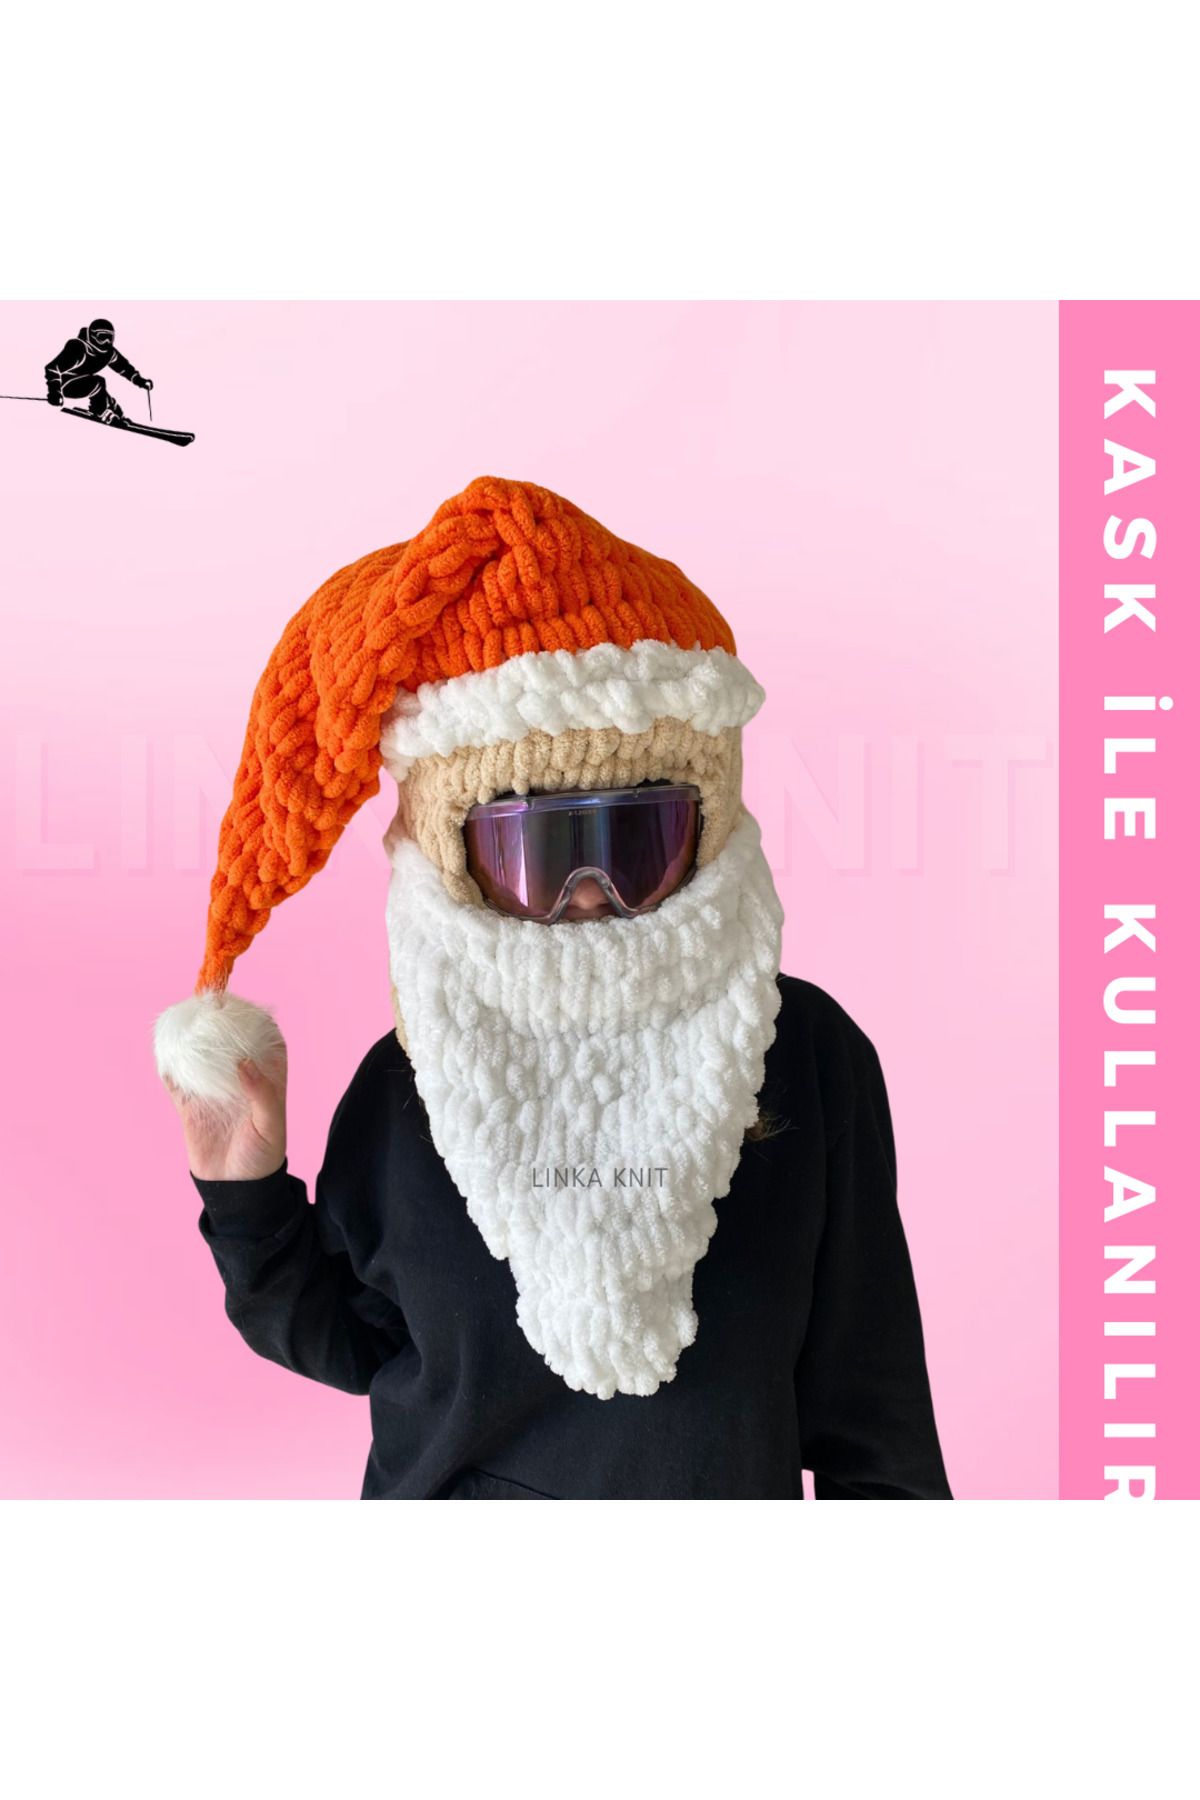 linka Noel Baba Kayak Maskesi & Balaclava, Kayak Kaskı Maskesi, Kask Kılıfı, Snowboard Maskesi